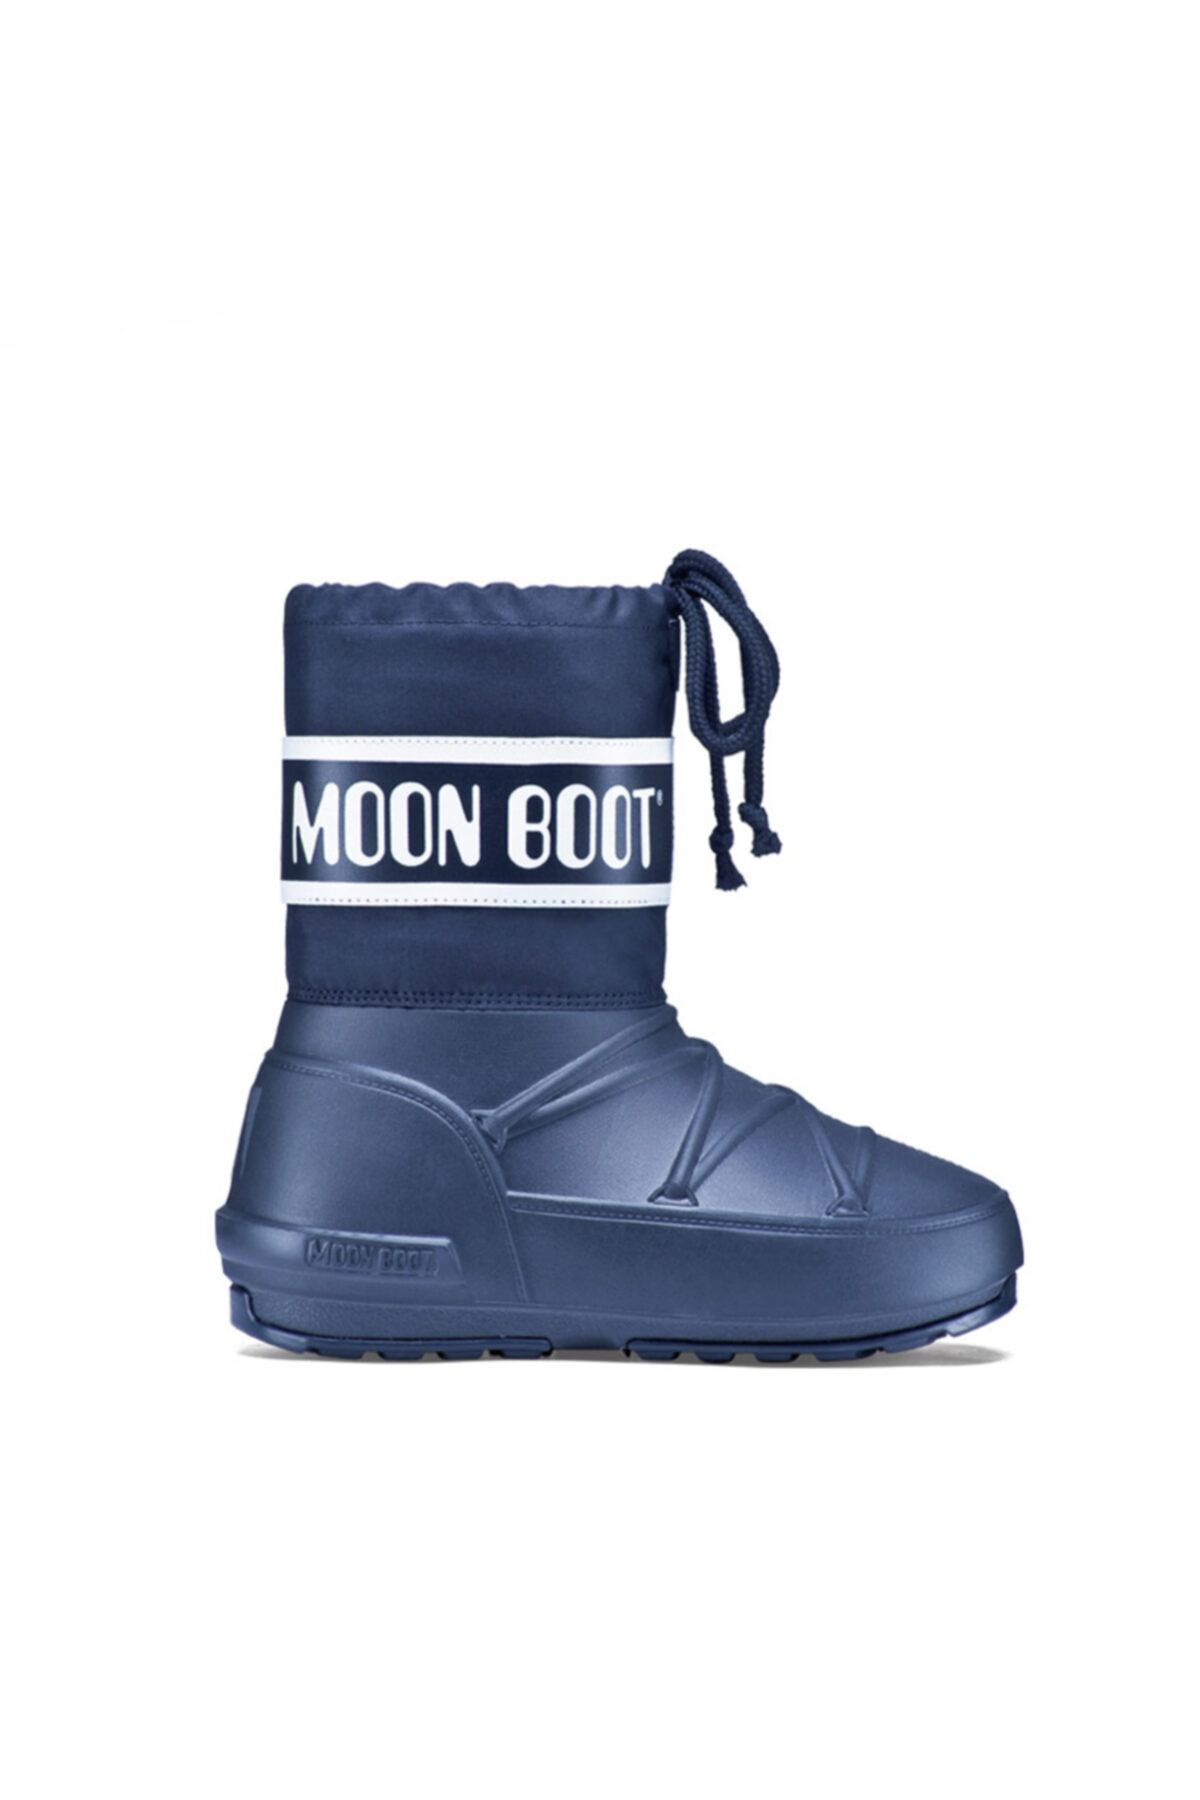 Moon Boot Mavi Erkek Kar Botu 34020100-003 Pod Jr / Blue (27-36)